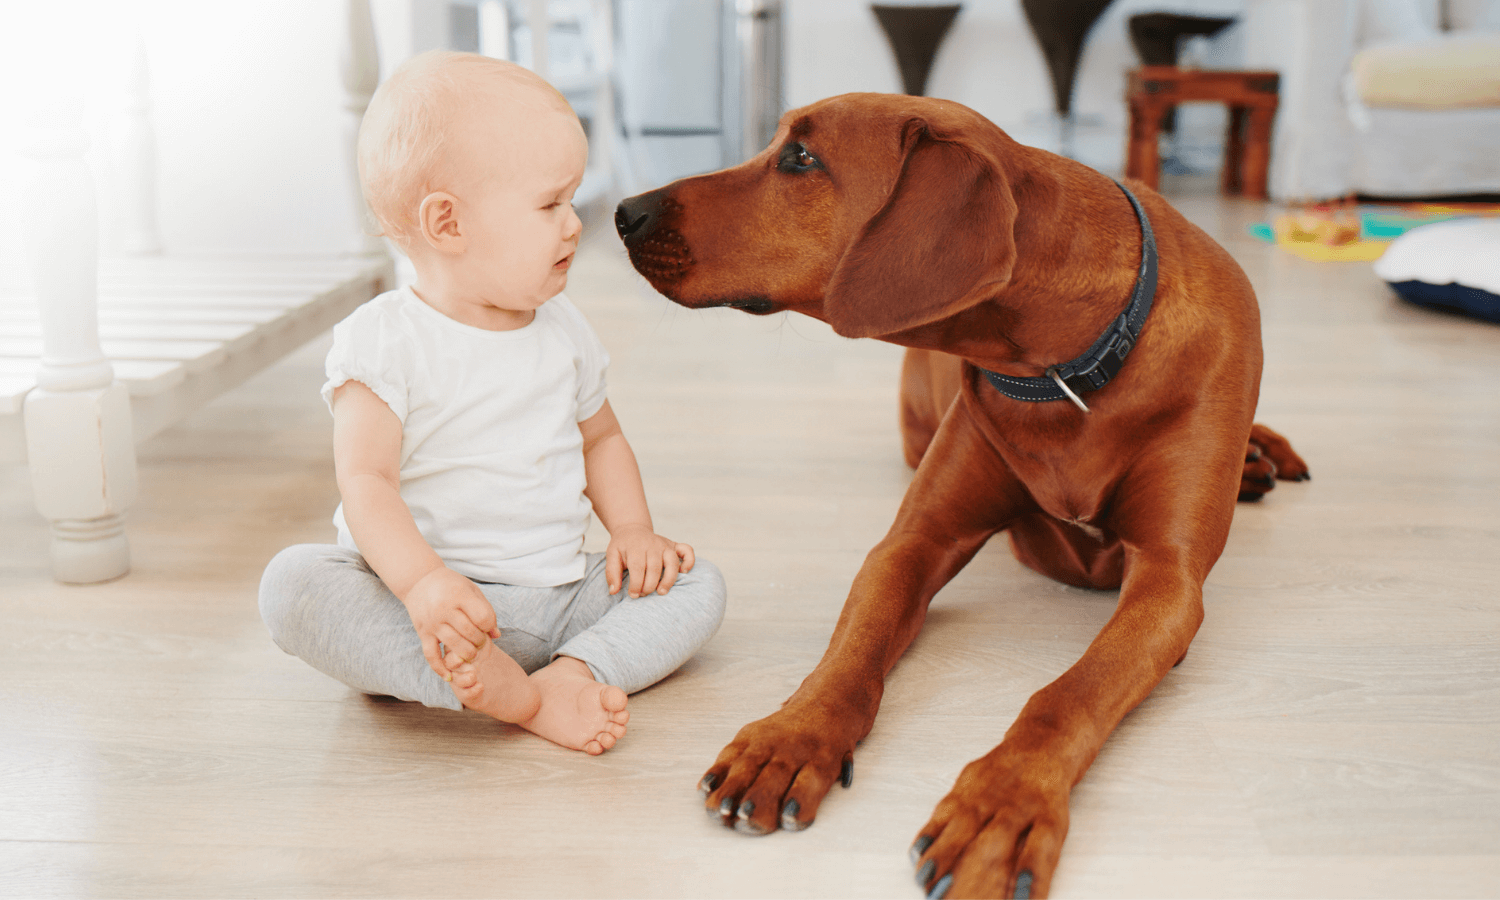 Wenn die Eltern den Wünschen der Kinder auf dem Wunschzettel nachgeben und einen Hund anschaffen, kann das sehr bereichernd für die Familie sein. Im Bild wird ein Baby mit Hund gezeigt. © Travall